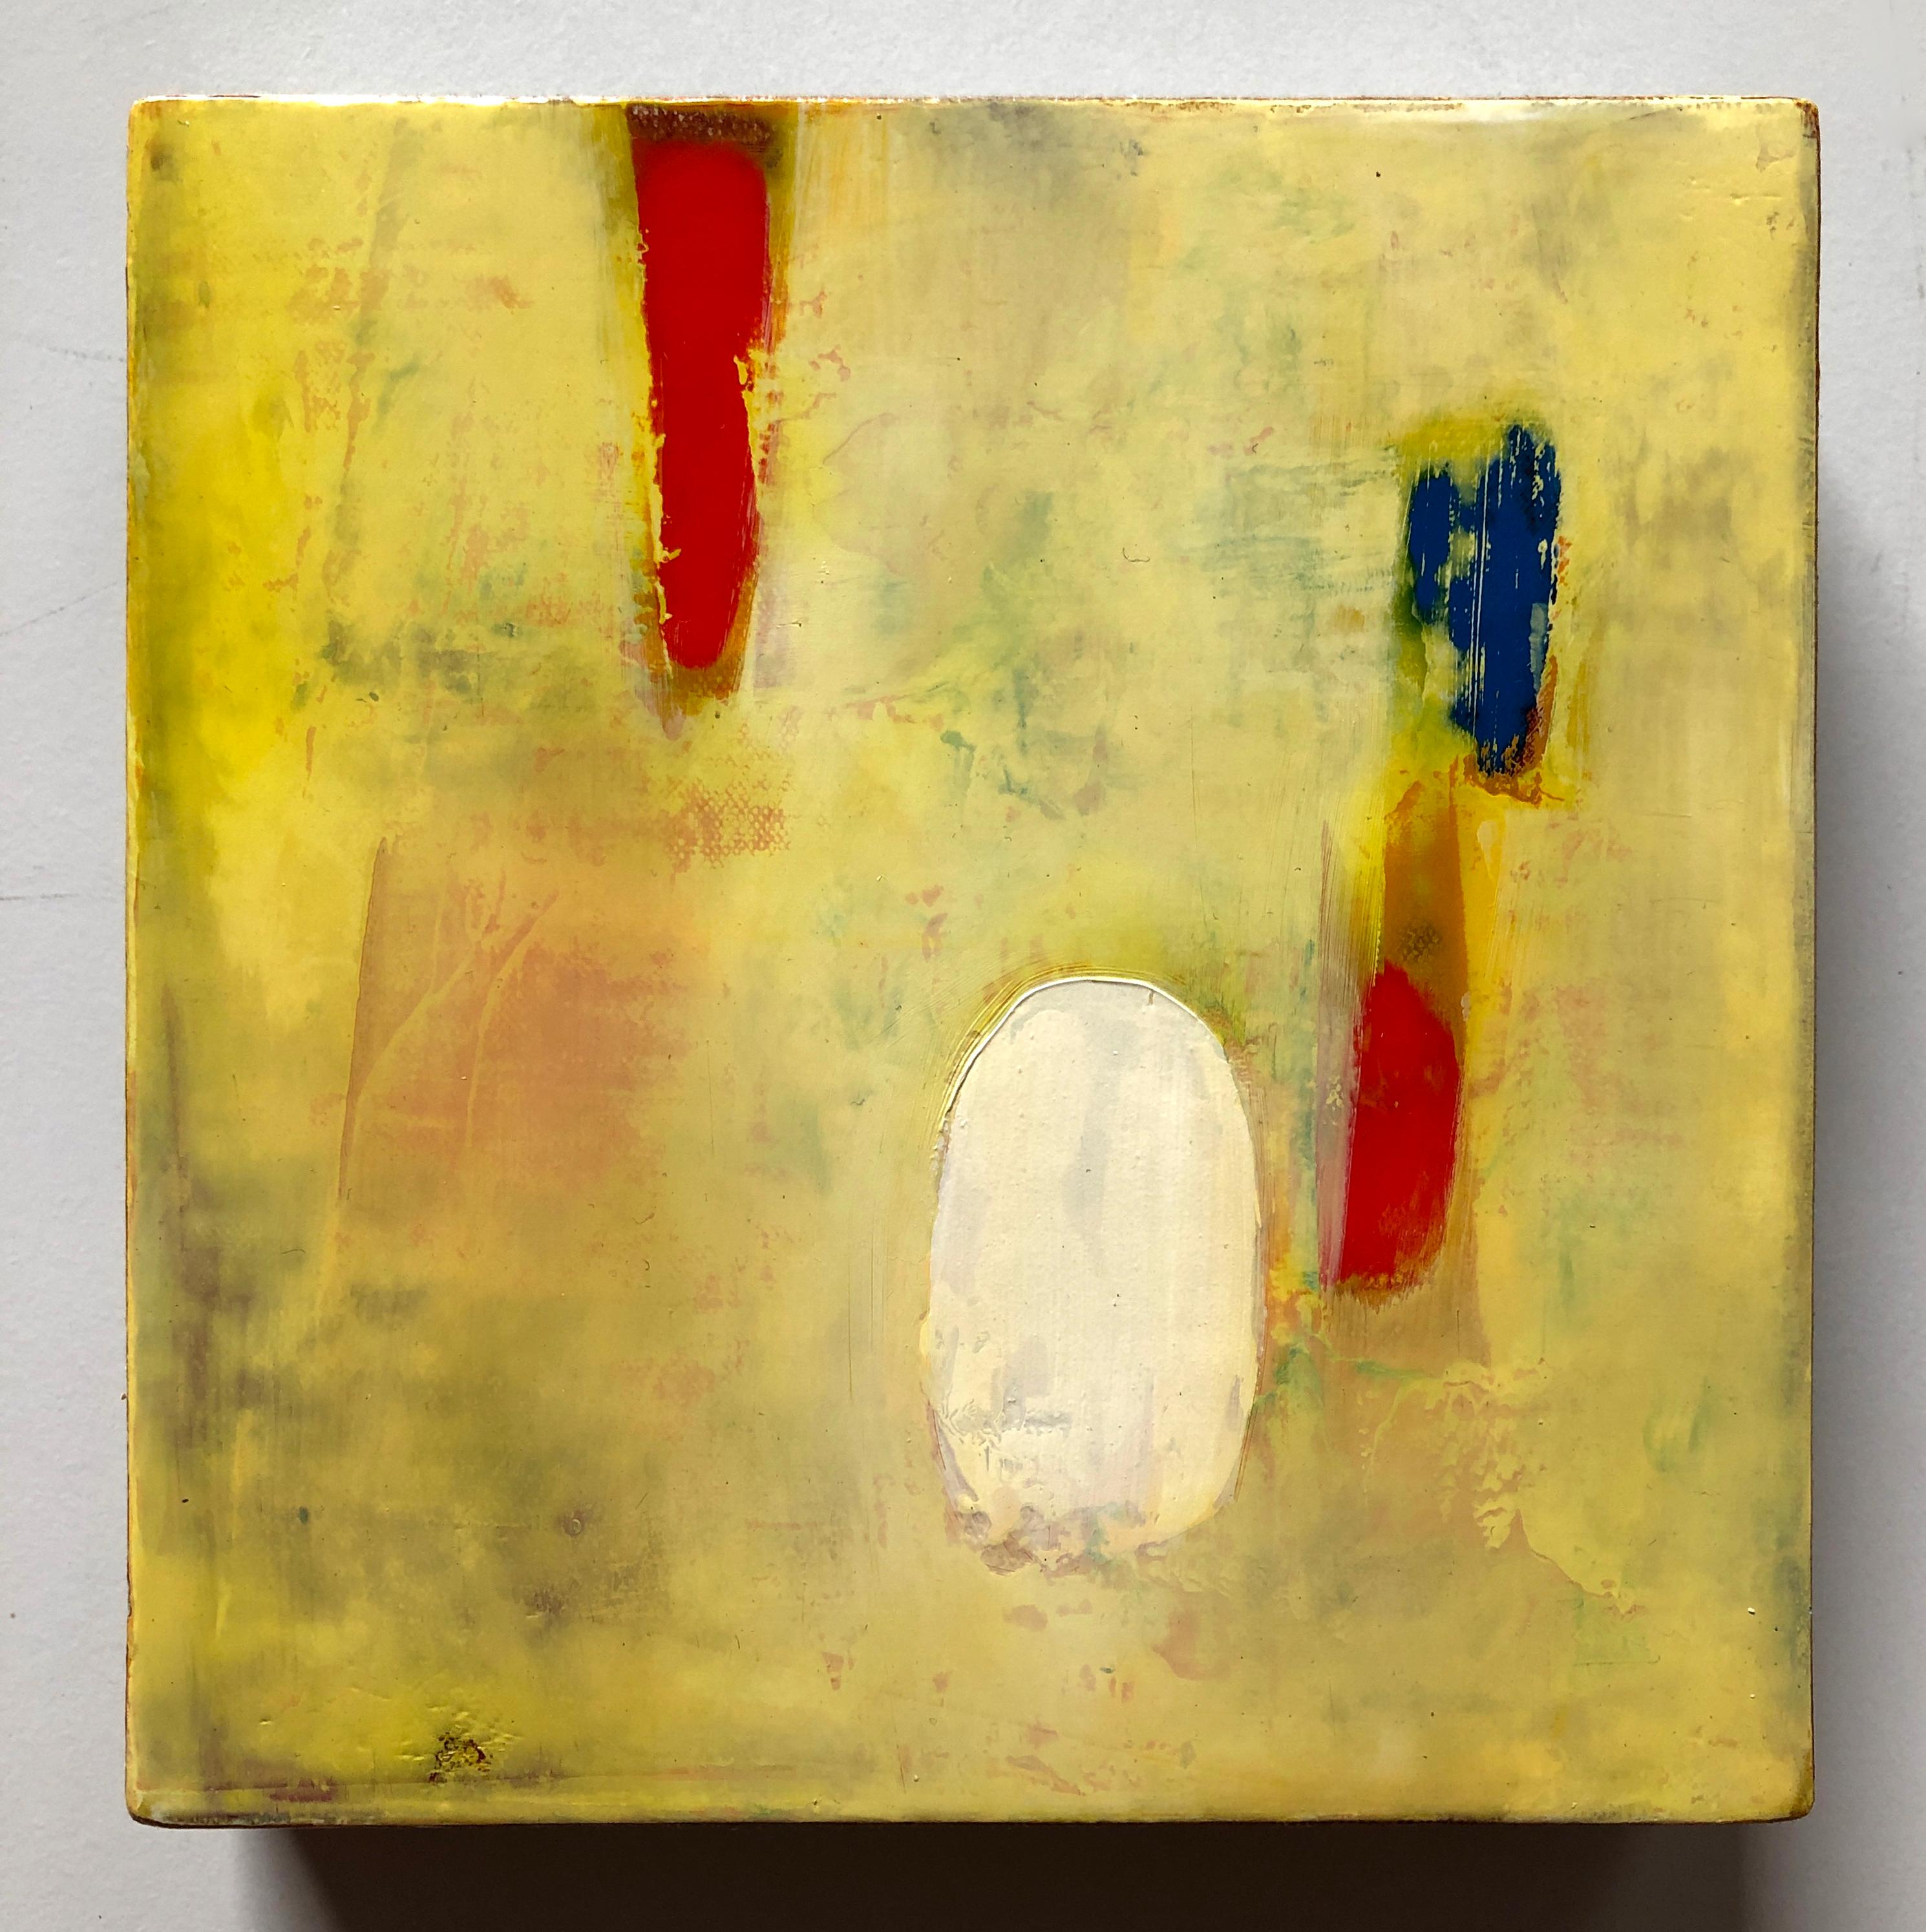 Figurative Painting Michele Mikesell - Peinture à l'huile sur toile jaune abstraite colorée, Canary